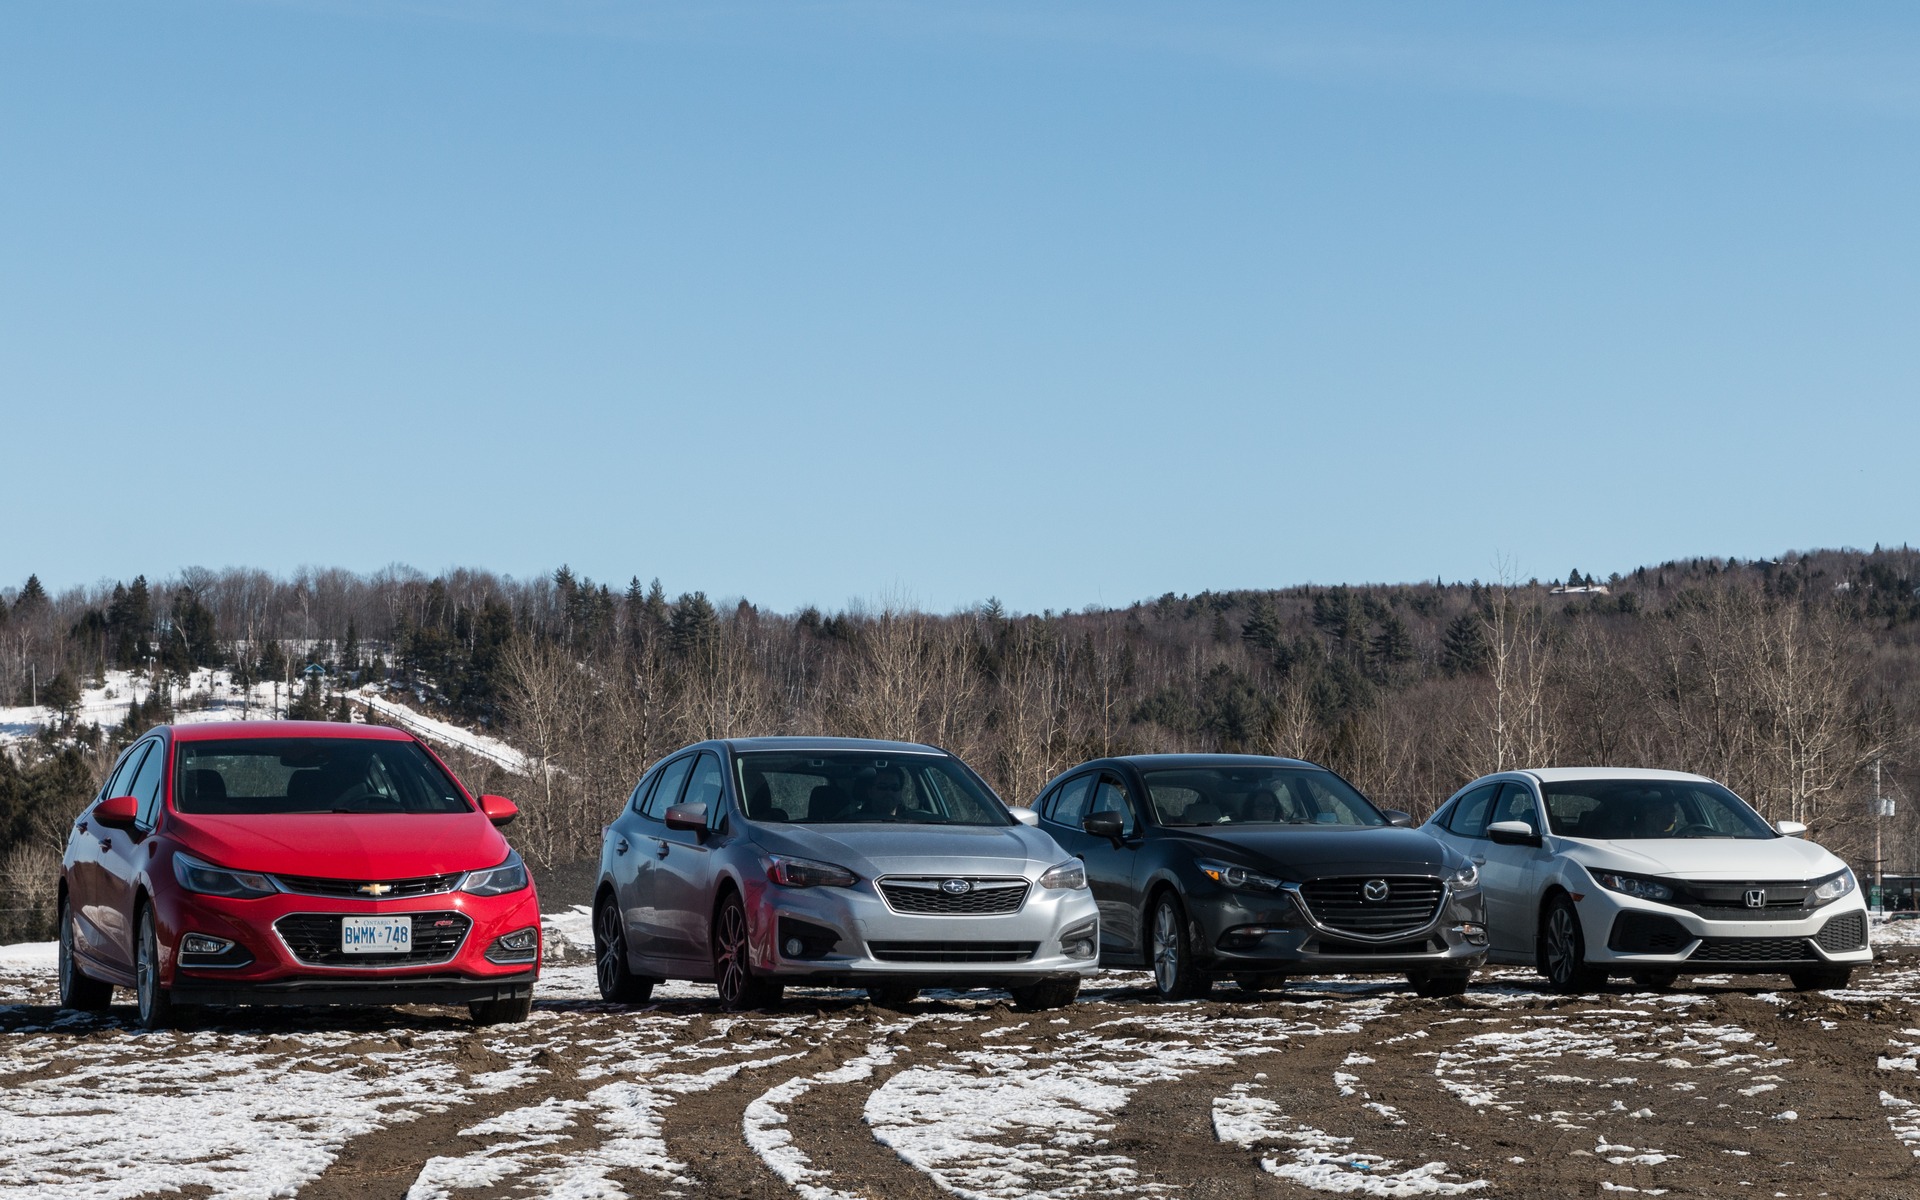 Match comparatif de compactes à hayon : Cruze, Impreza, Civic et Mazda3  s'affrontent - Guide Auto